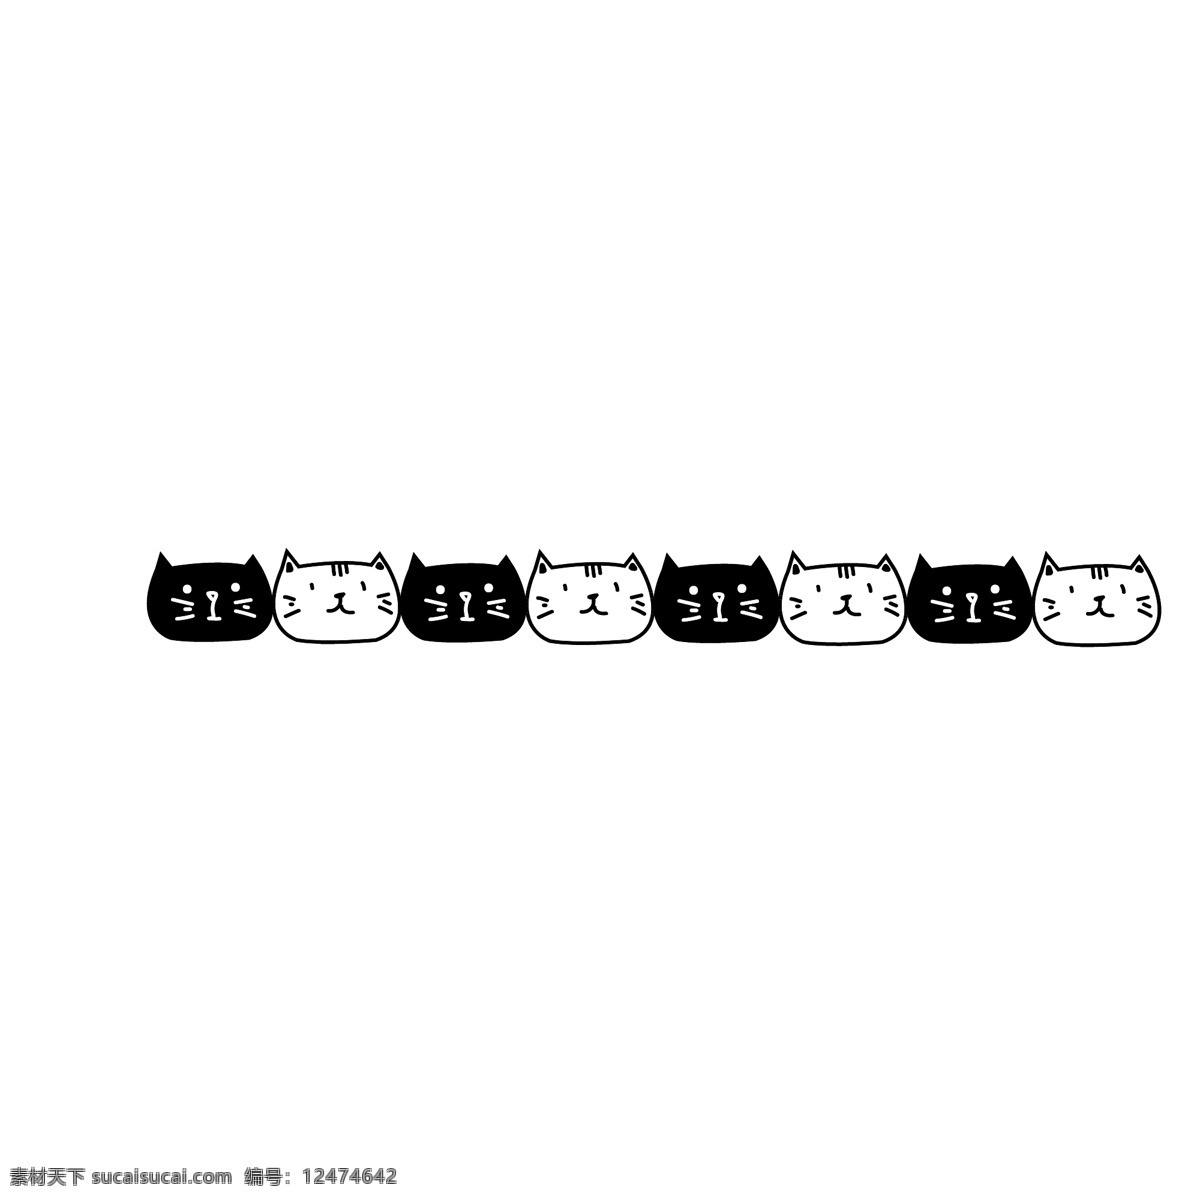 黑白 猫咪 分割线 插画 黑白猫咪 猫咪分割线 卡通分割线 分割线插画 创意分割线 可爱的猫咪 卡通猫咪